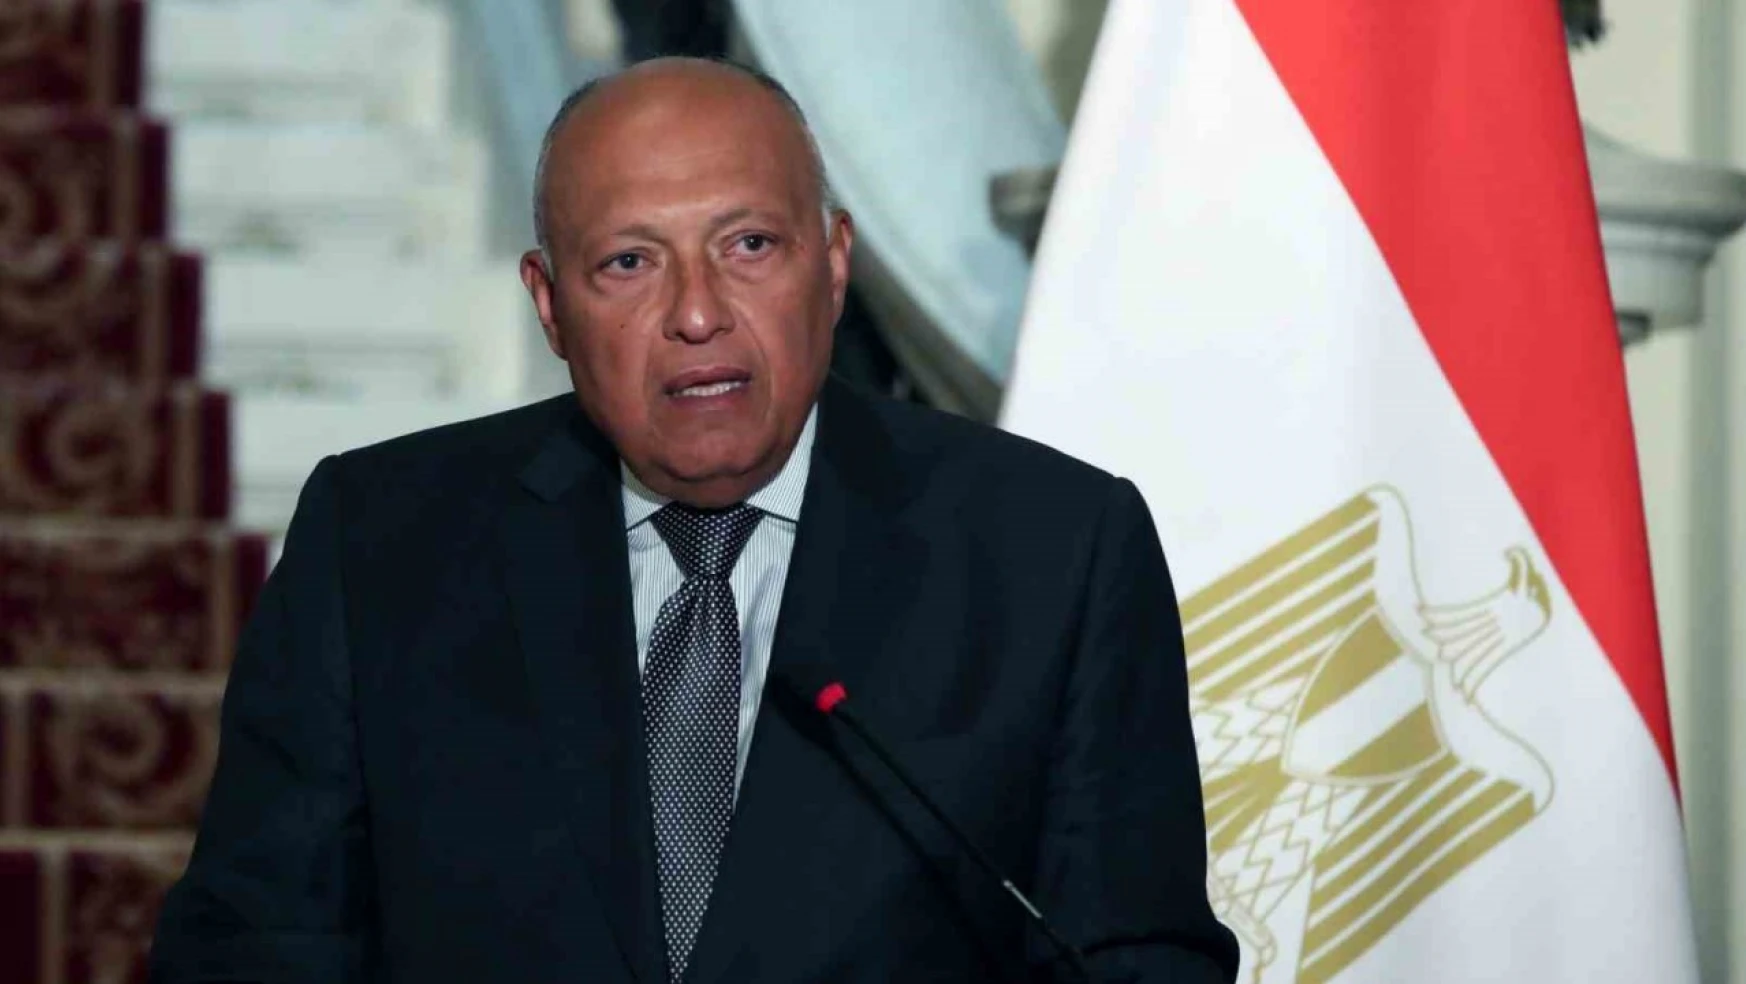 Mısır, Camp David Anlaşması'nı askıya alacaklarına yönelik iddiaları yalanladı